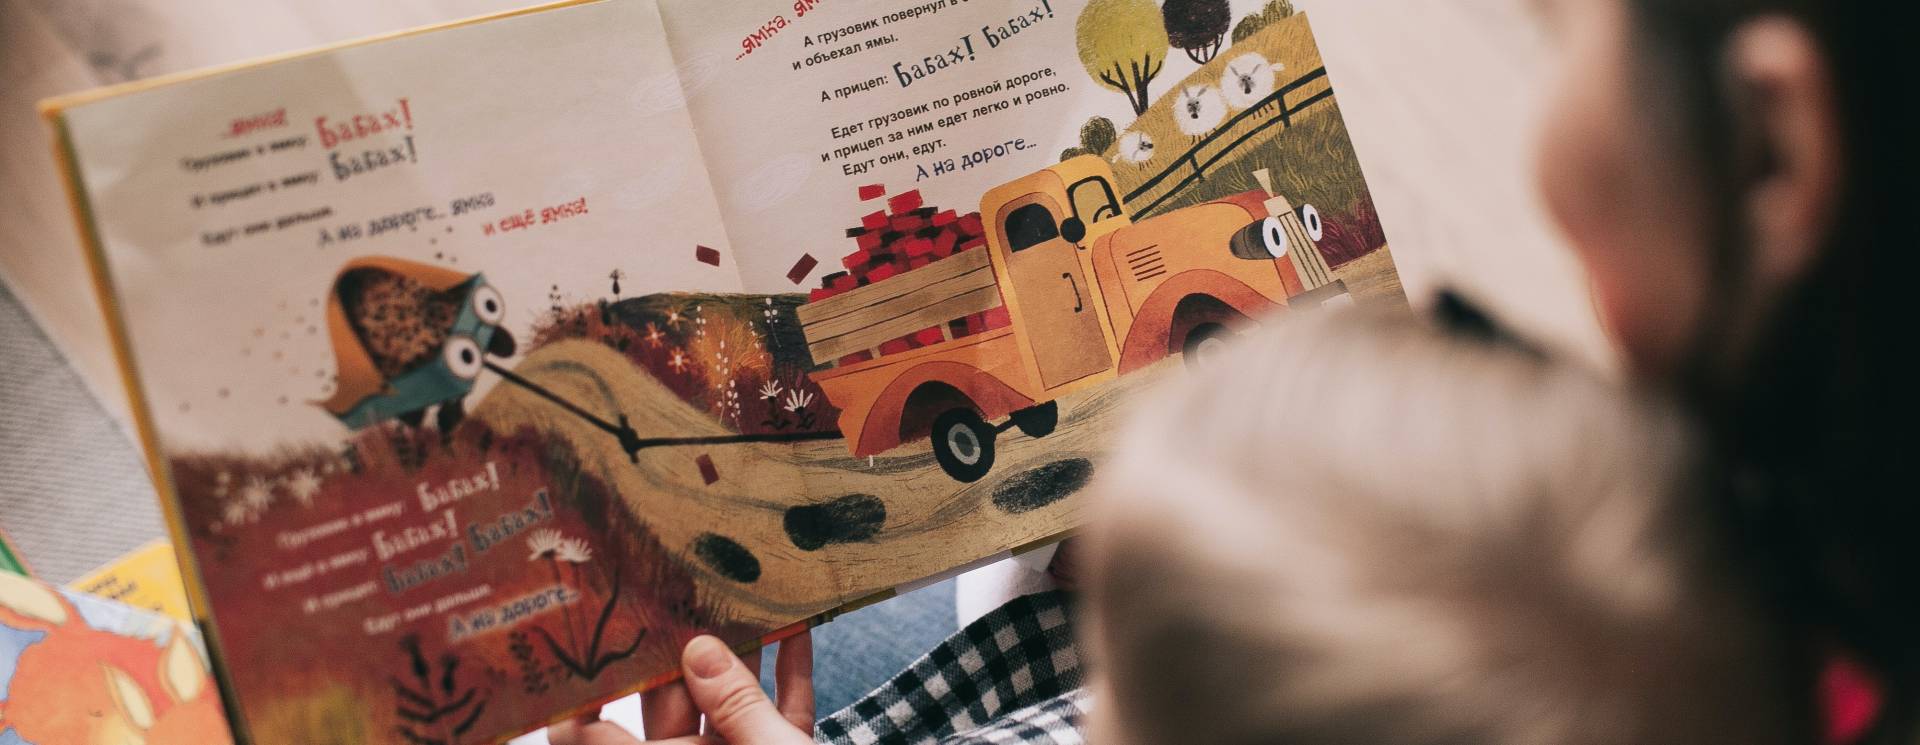 Foto de un libro de cuentos para niños